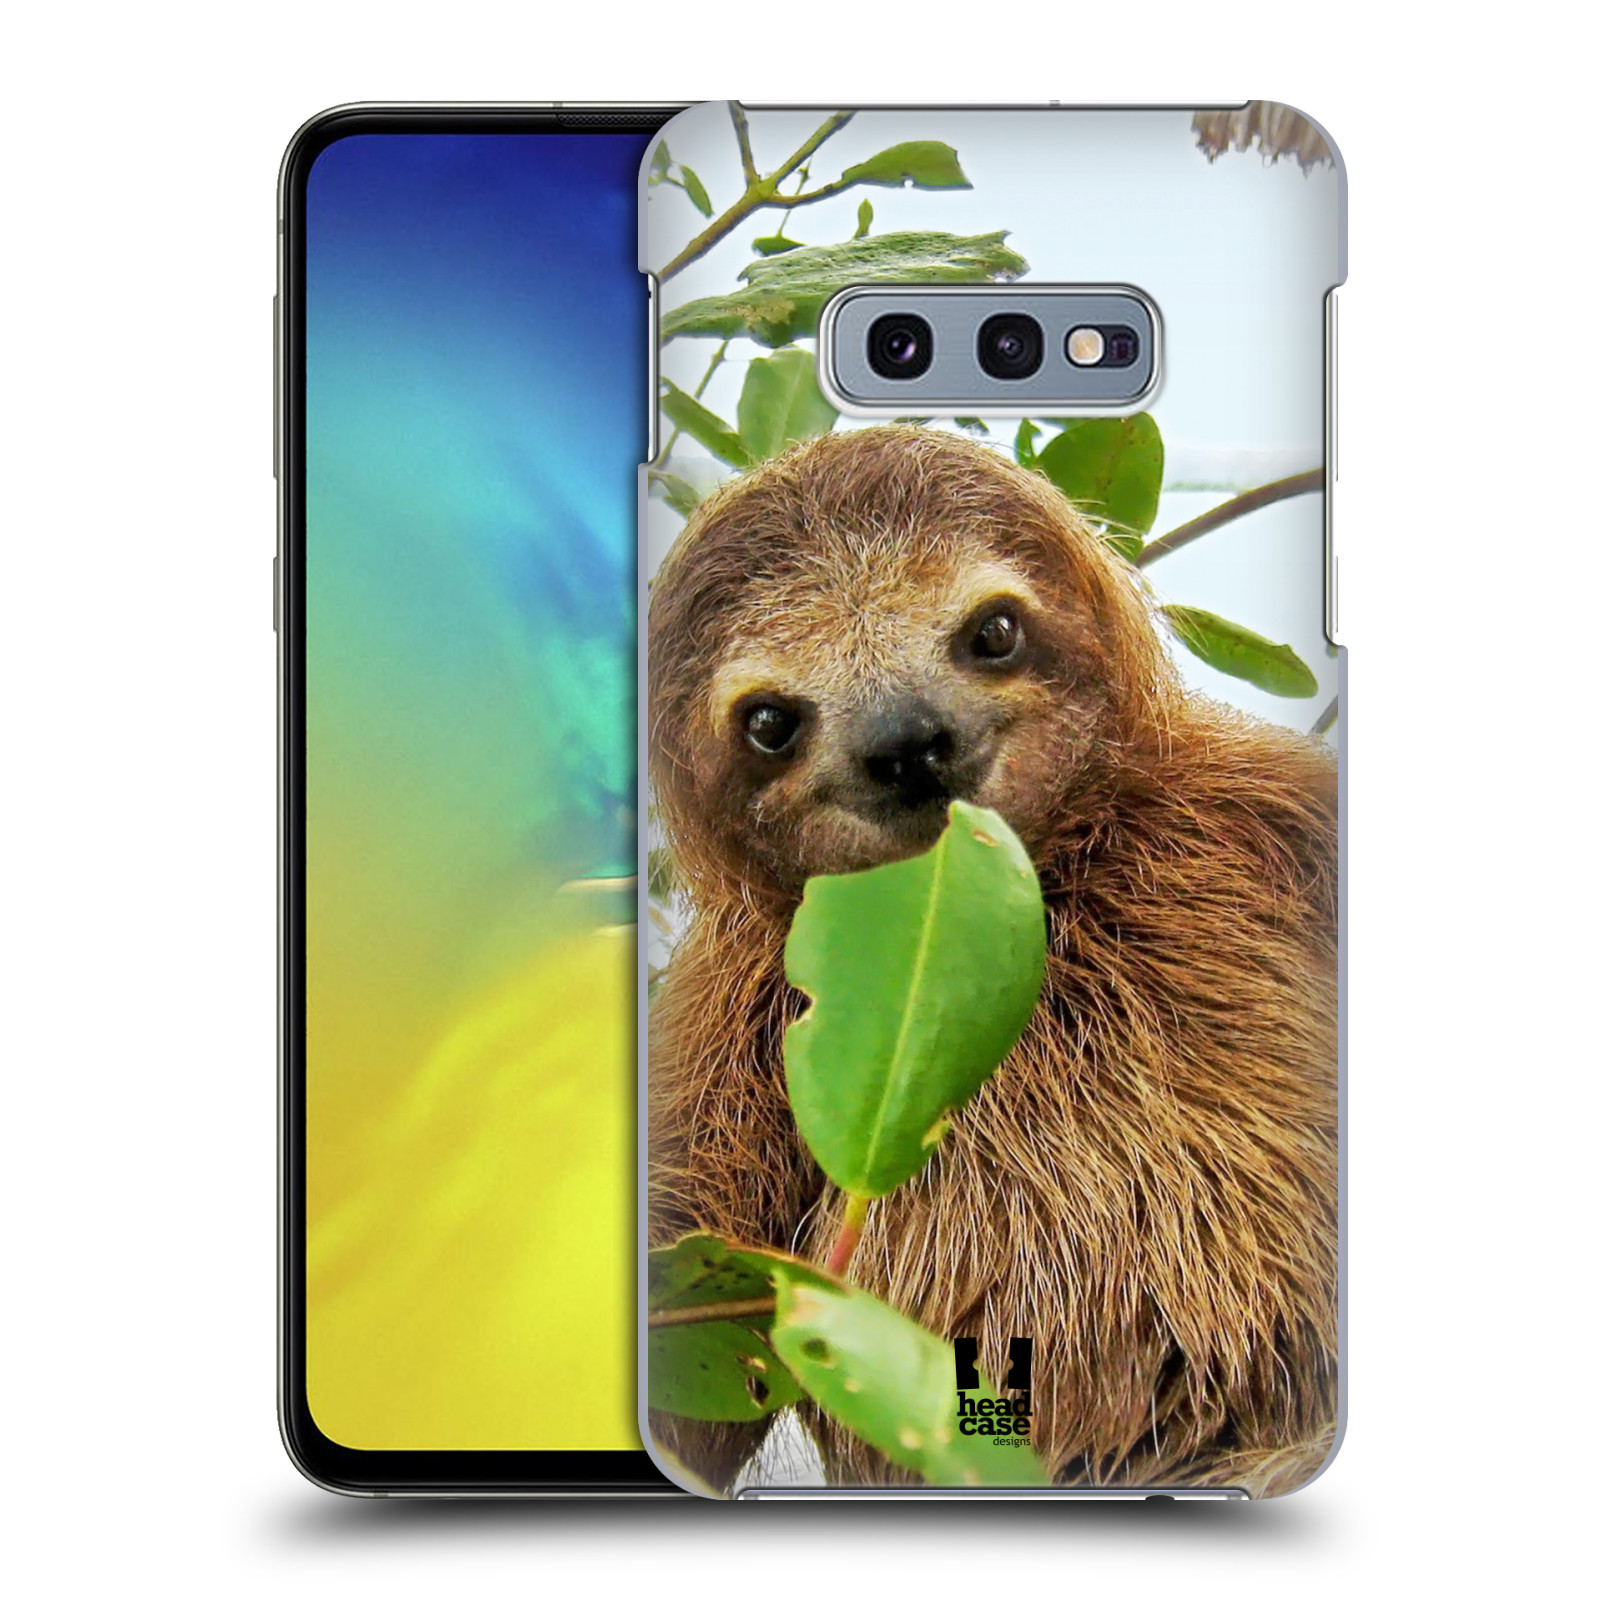 Pouzdro na mobil Samsung Galaxy S10e - HEAD CASE - vzor slavná zvířata foto lenochod